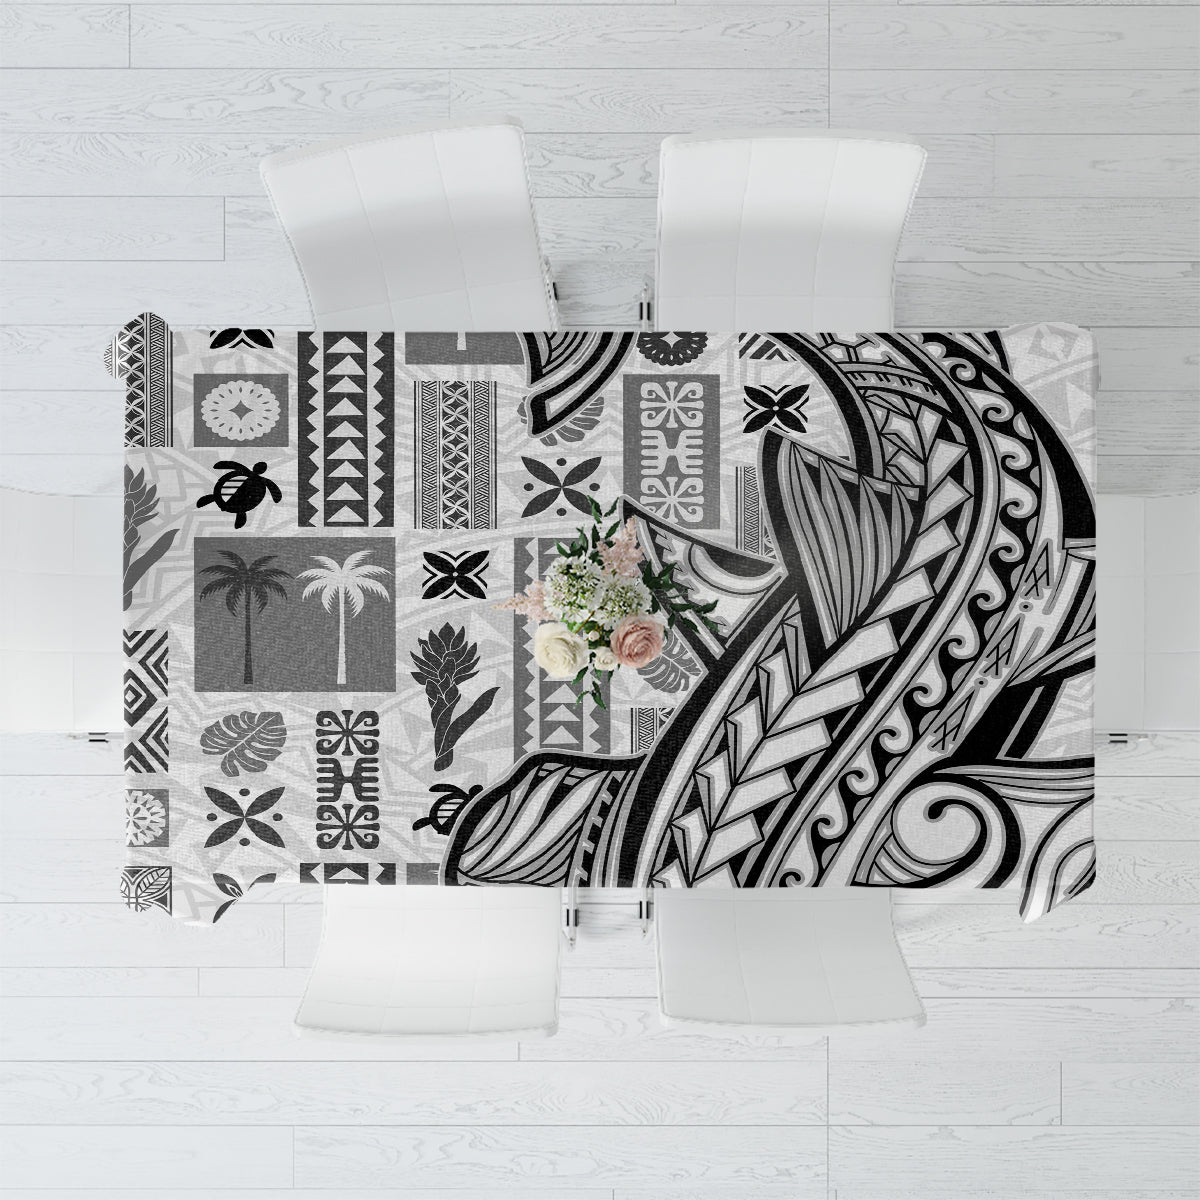 Samoa Tapa Tablecloth Siapo Mix Tatau Patterns - White LT7 White - Polynesian Pride